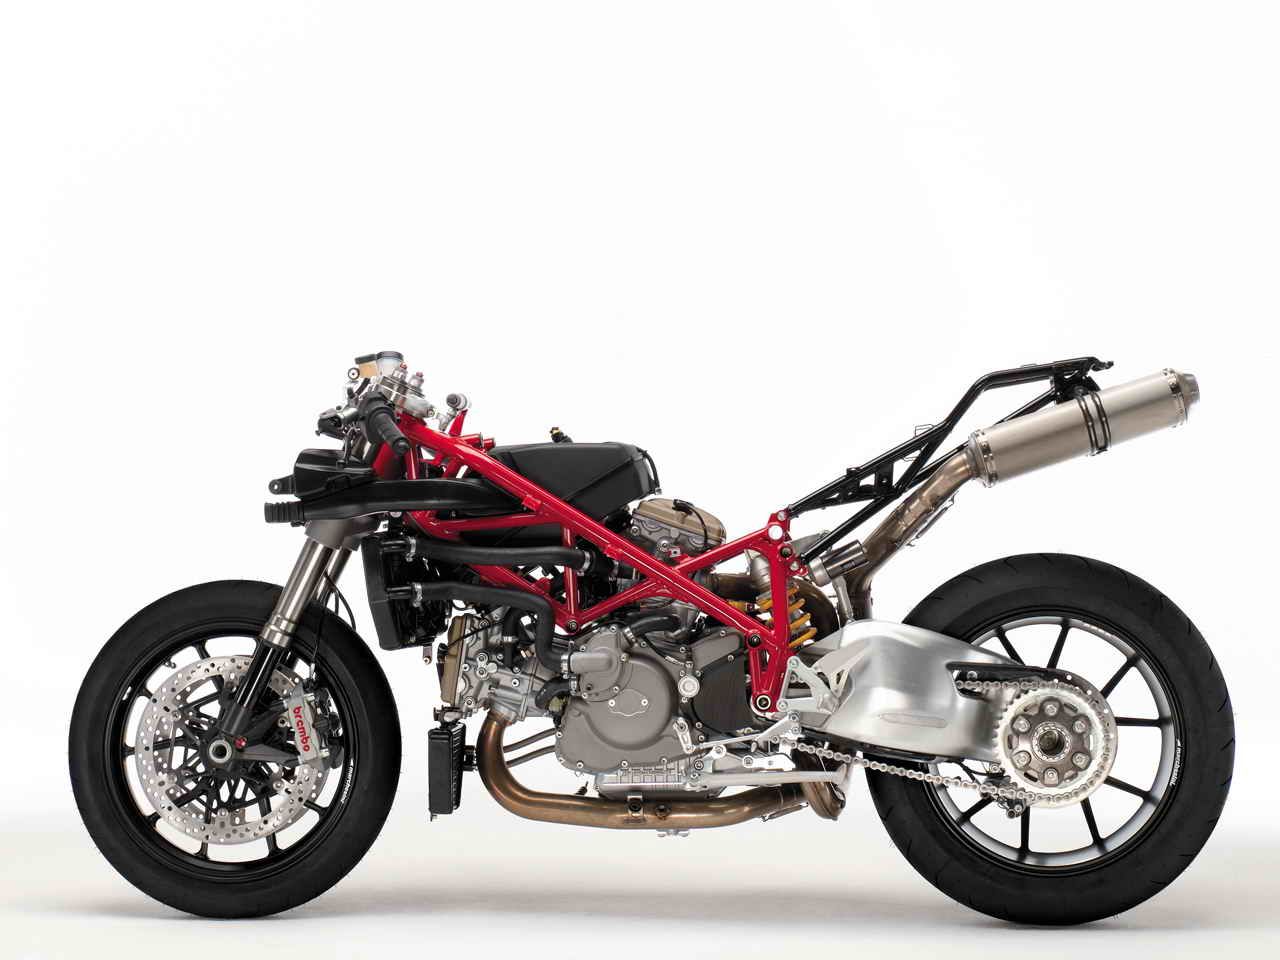 2007 Ducati 1098 Superbike